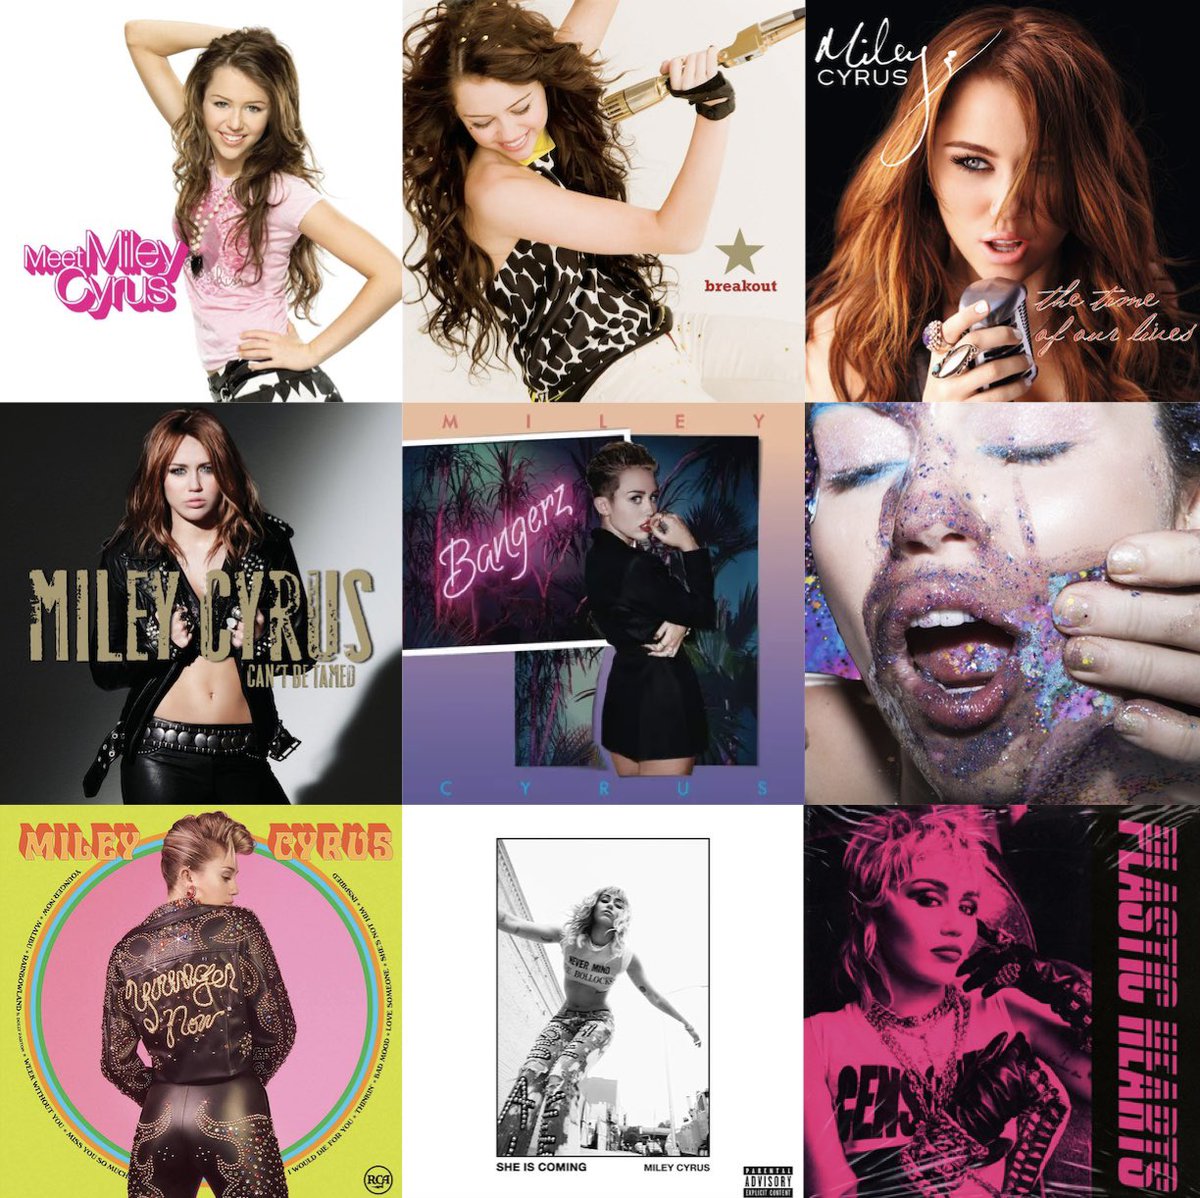 rank Miley Cyrus’s discography